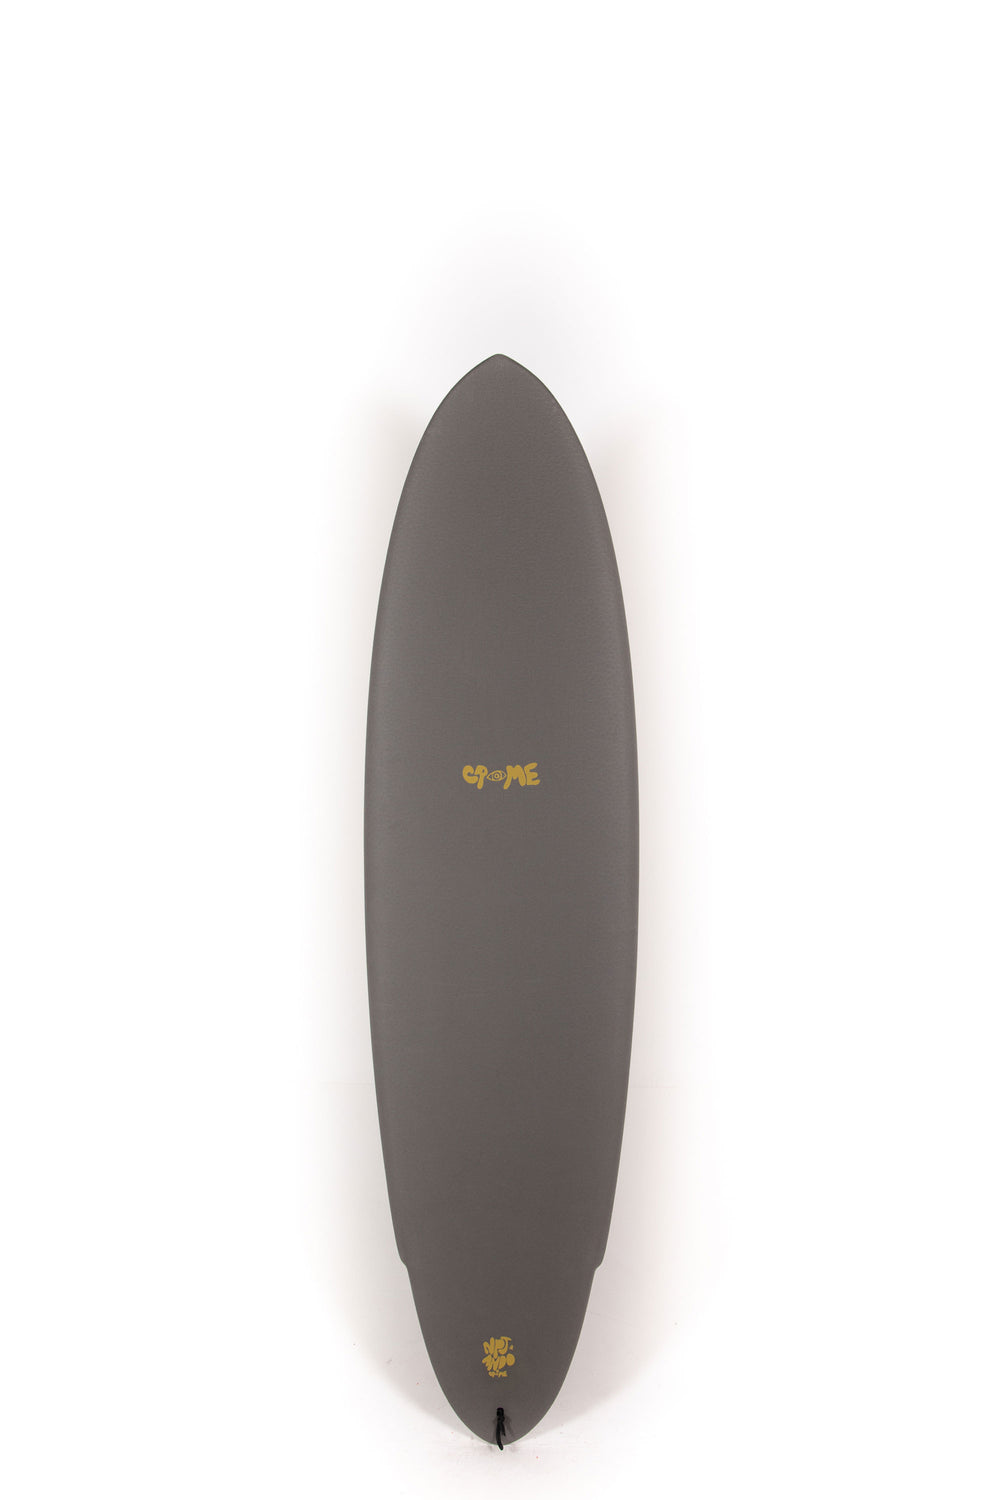 Pukas-Surf-Shop-Crime-Surfboards-Zephyr-Ando-NPJ-Carbon-Olive-7_0_